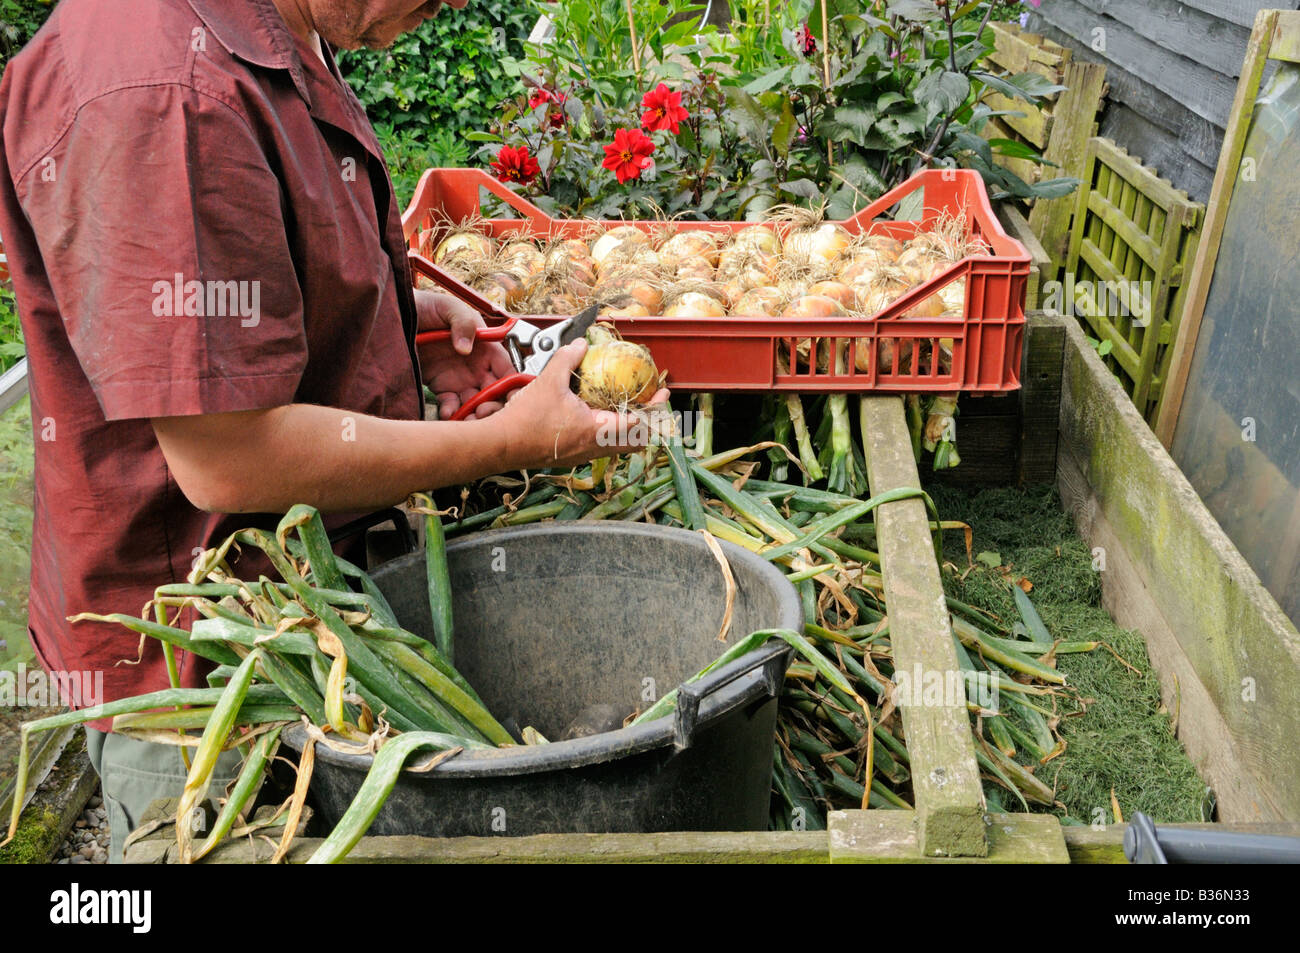 Le tri et le jardinier accueil fraisage principale culture des oignons cultivés pour l'entreposage hivernal Norfolk UK Août Banque D'Images